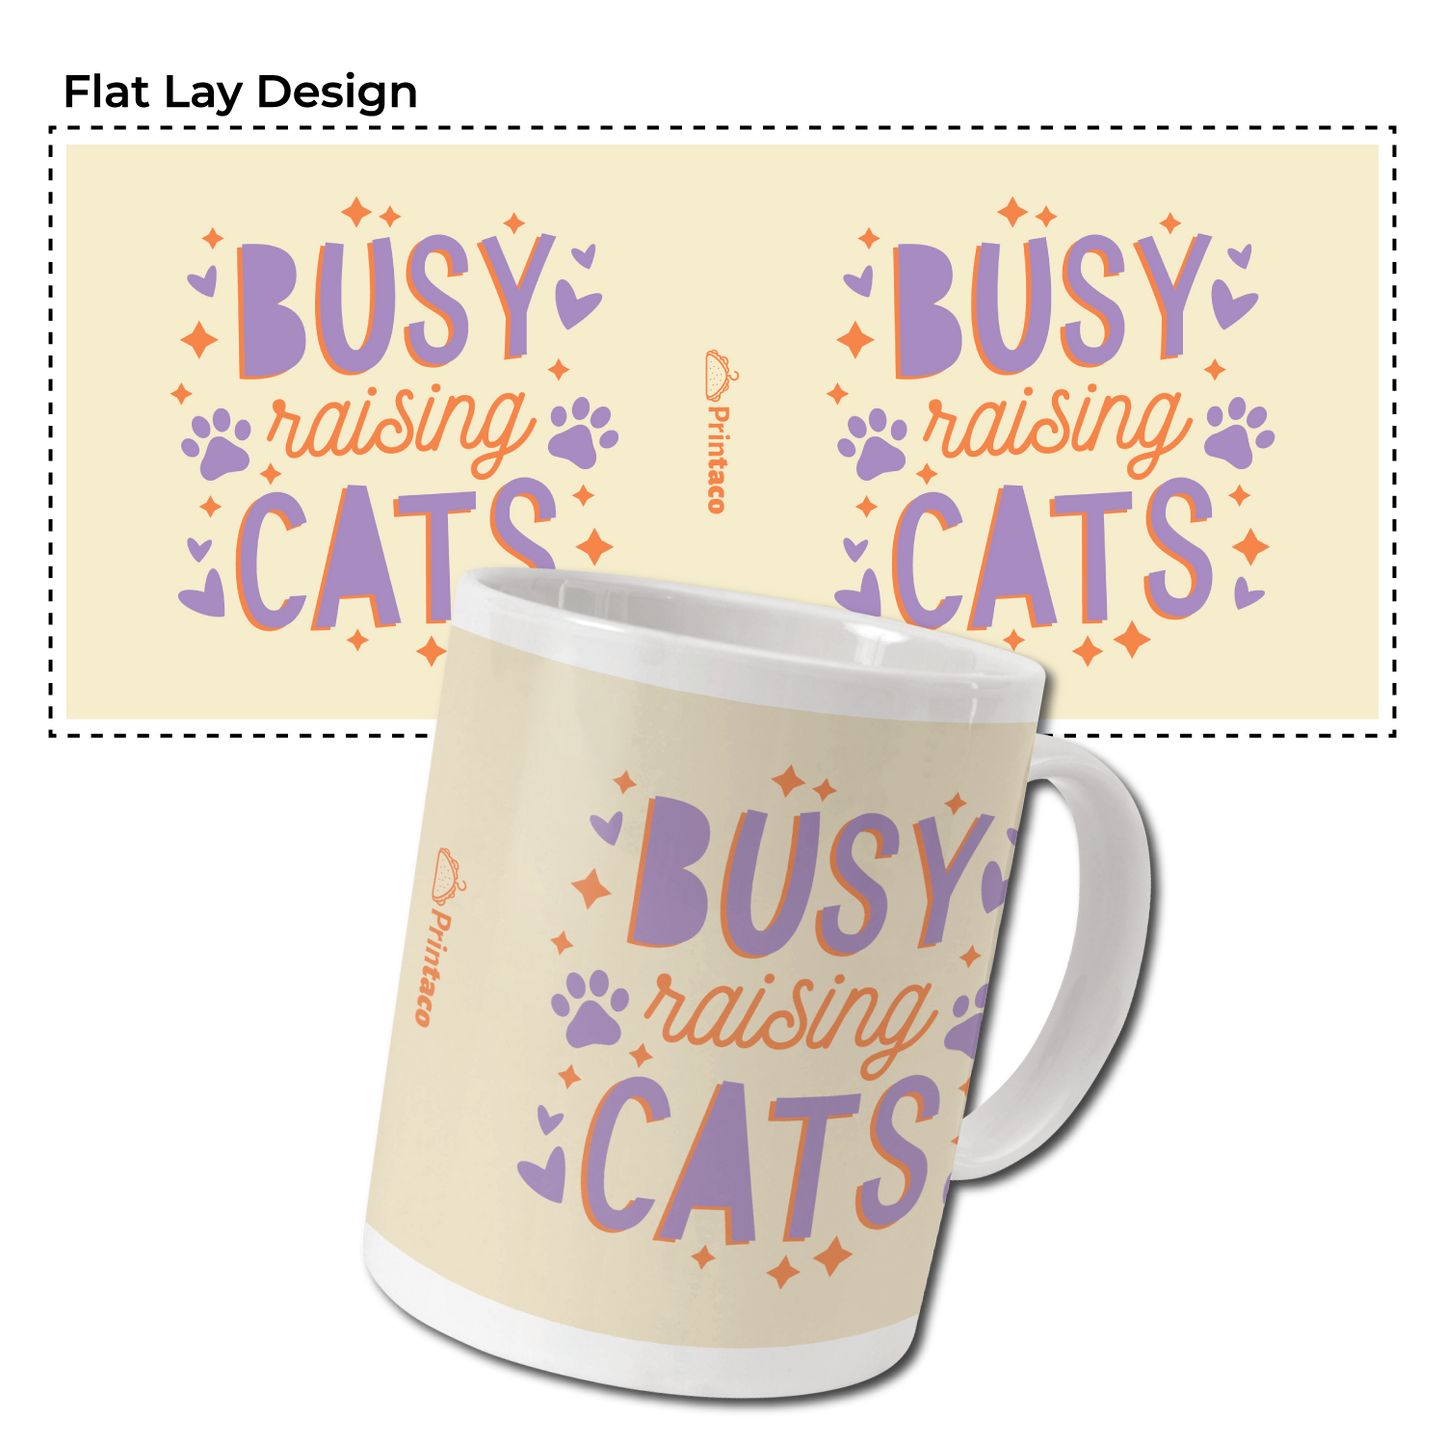 11oz Ceramic Mug: Busy Cats